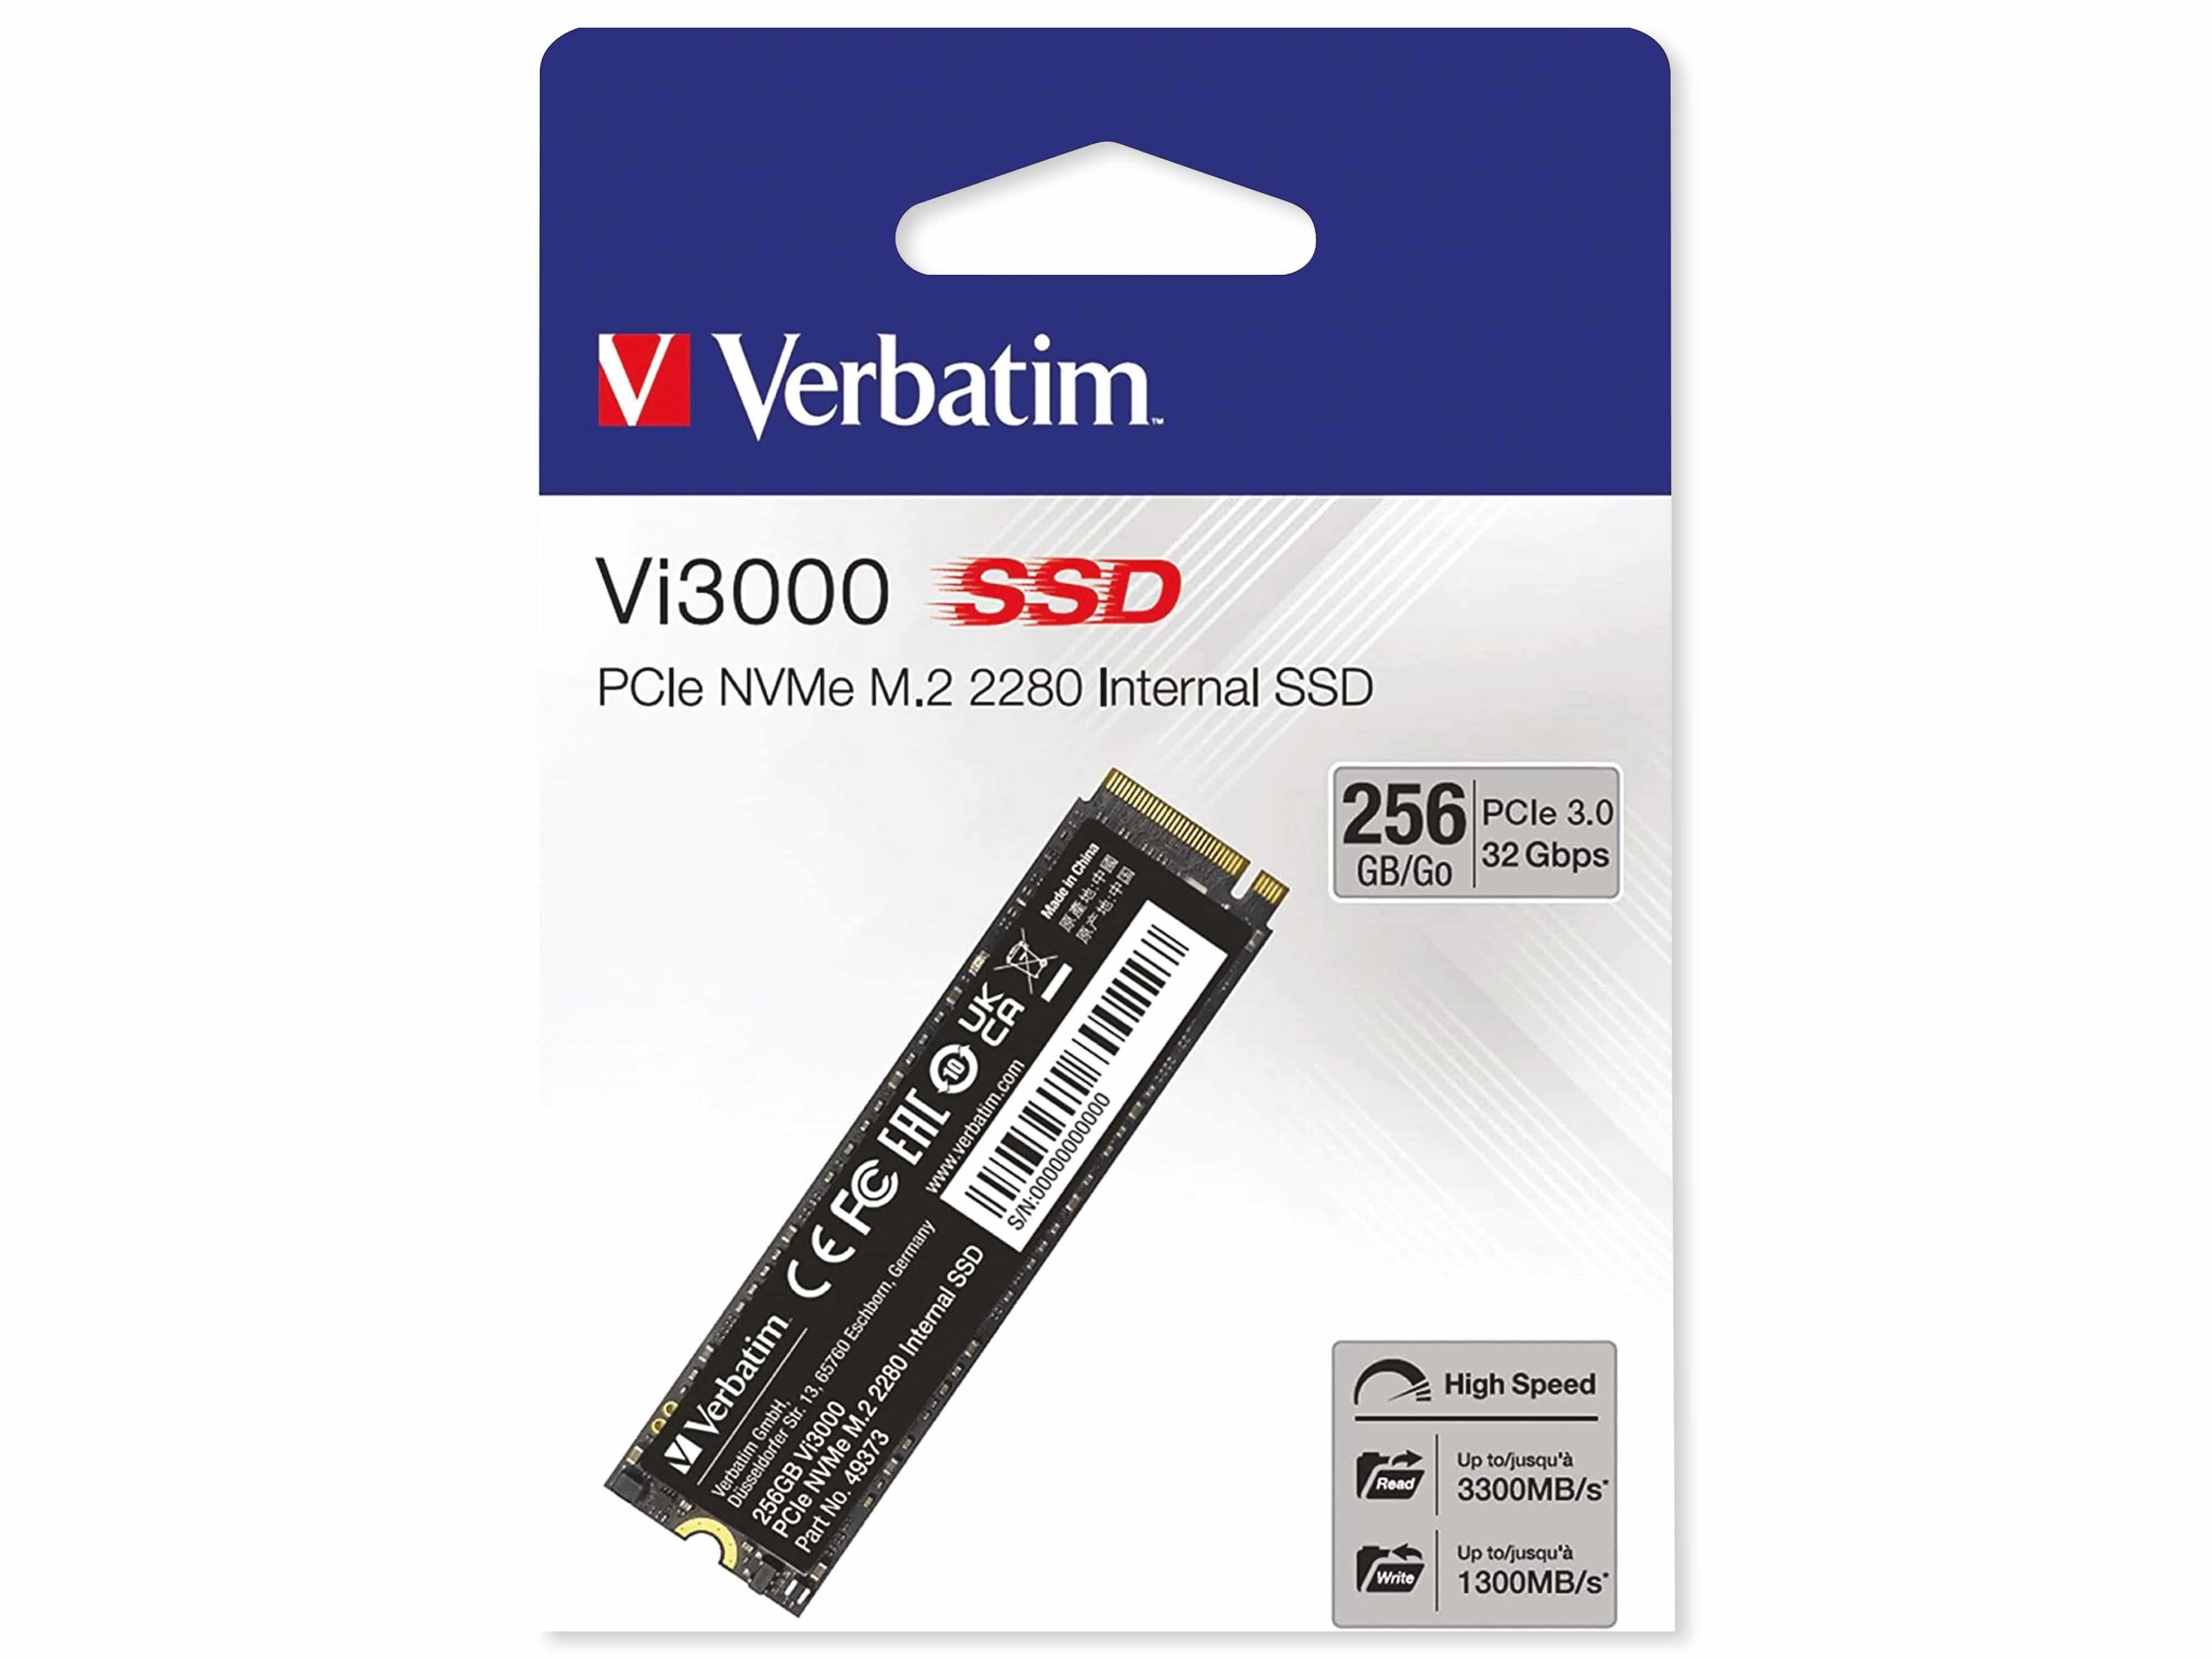 VERBATIM M.2 2280 SSD Vi3000, PCIe 3.0, 256 GB